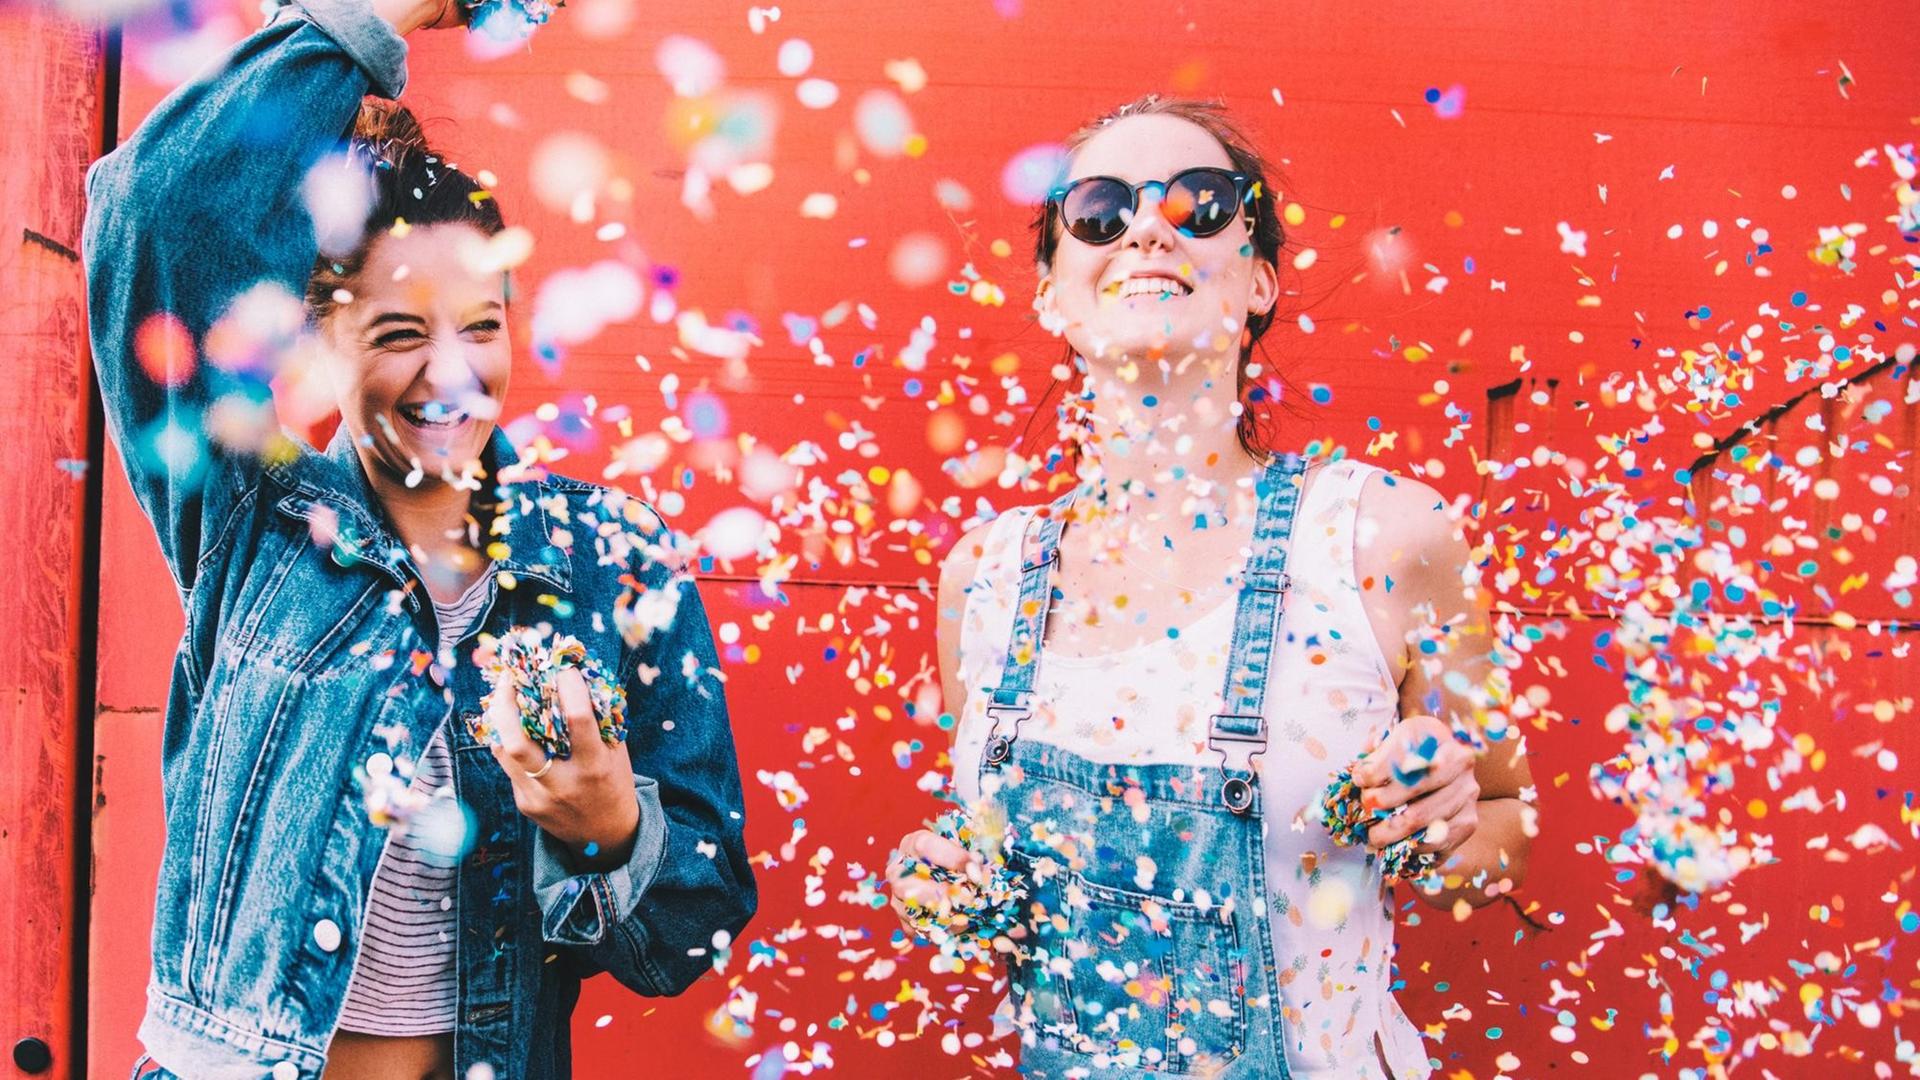 Zwei Frauen stehen vor einer roten Wand und werfen voll Freude Konfetti in die Luft.